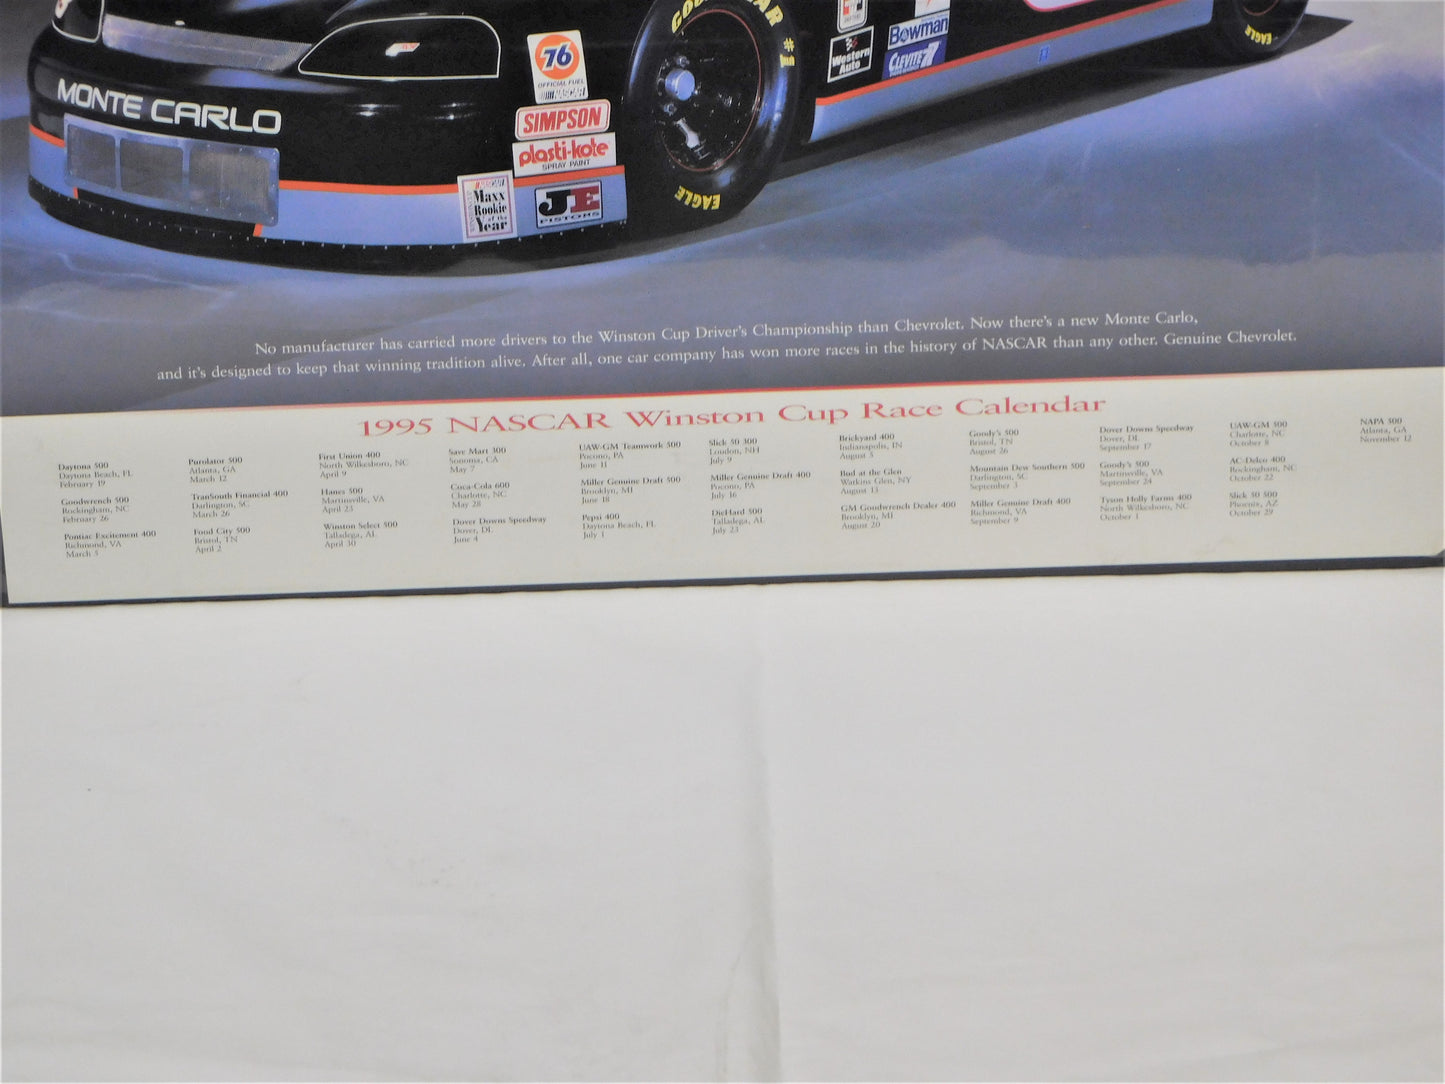 1995 NASCAR Race Calendar Featuring the #3 Car